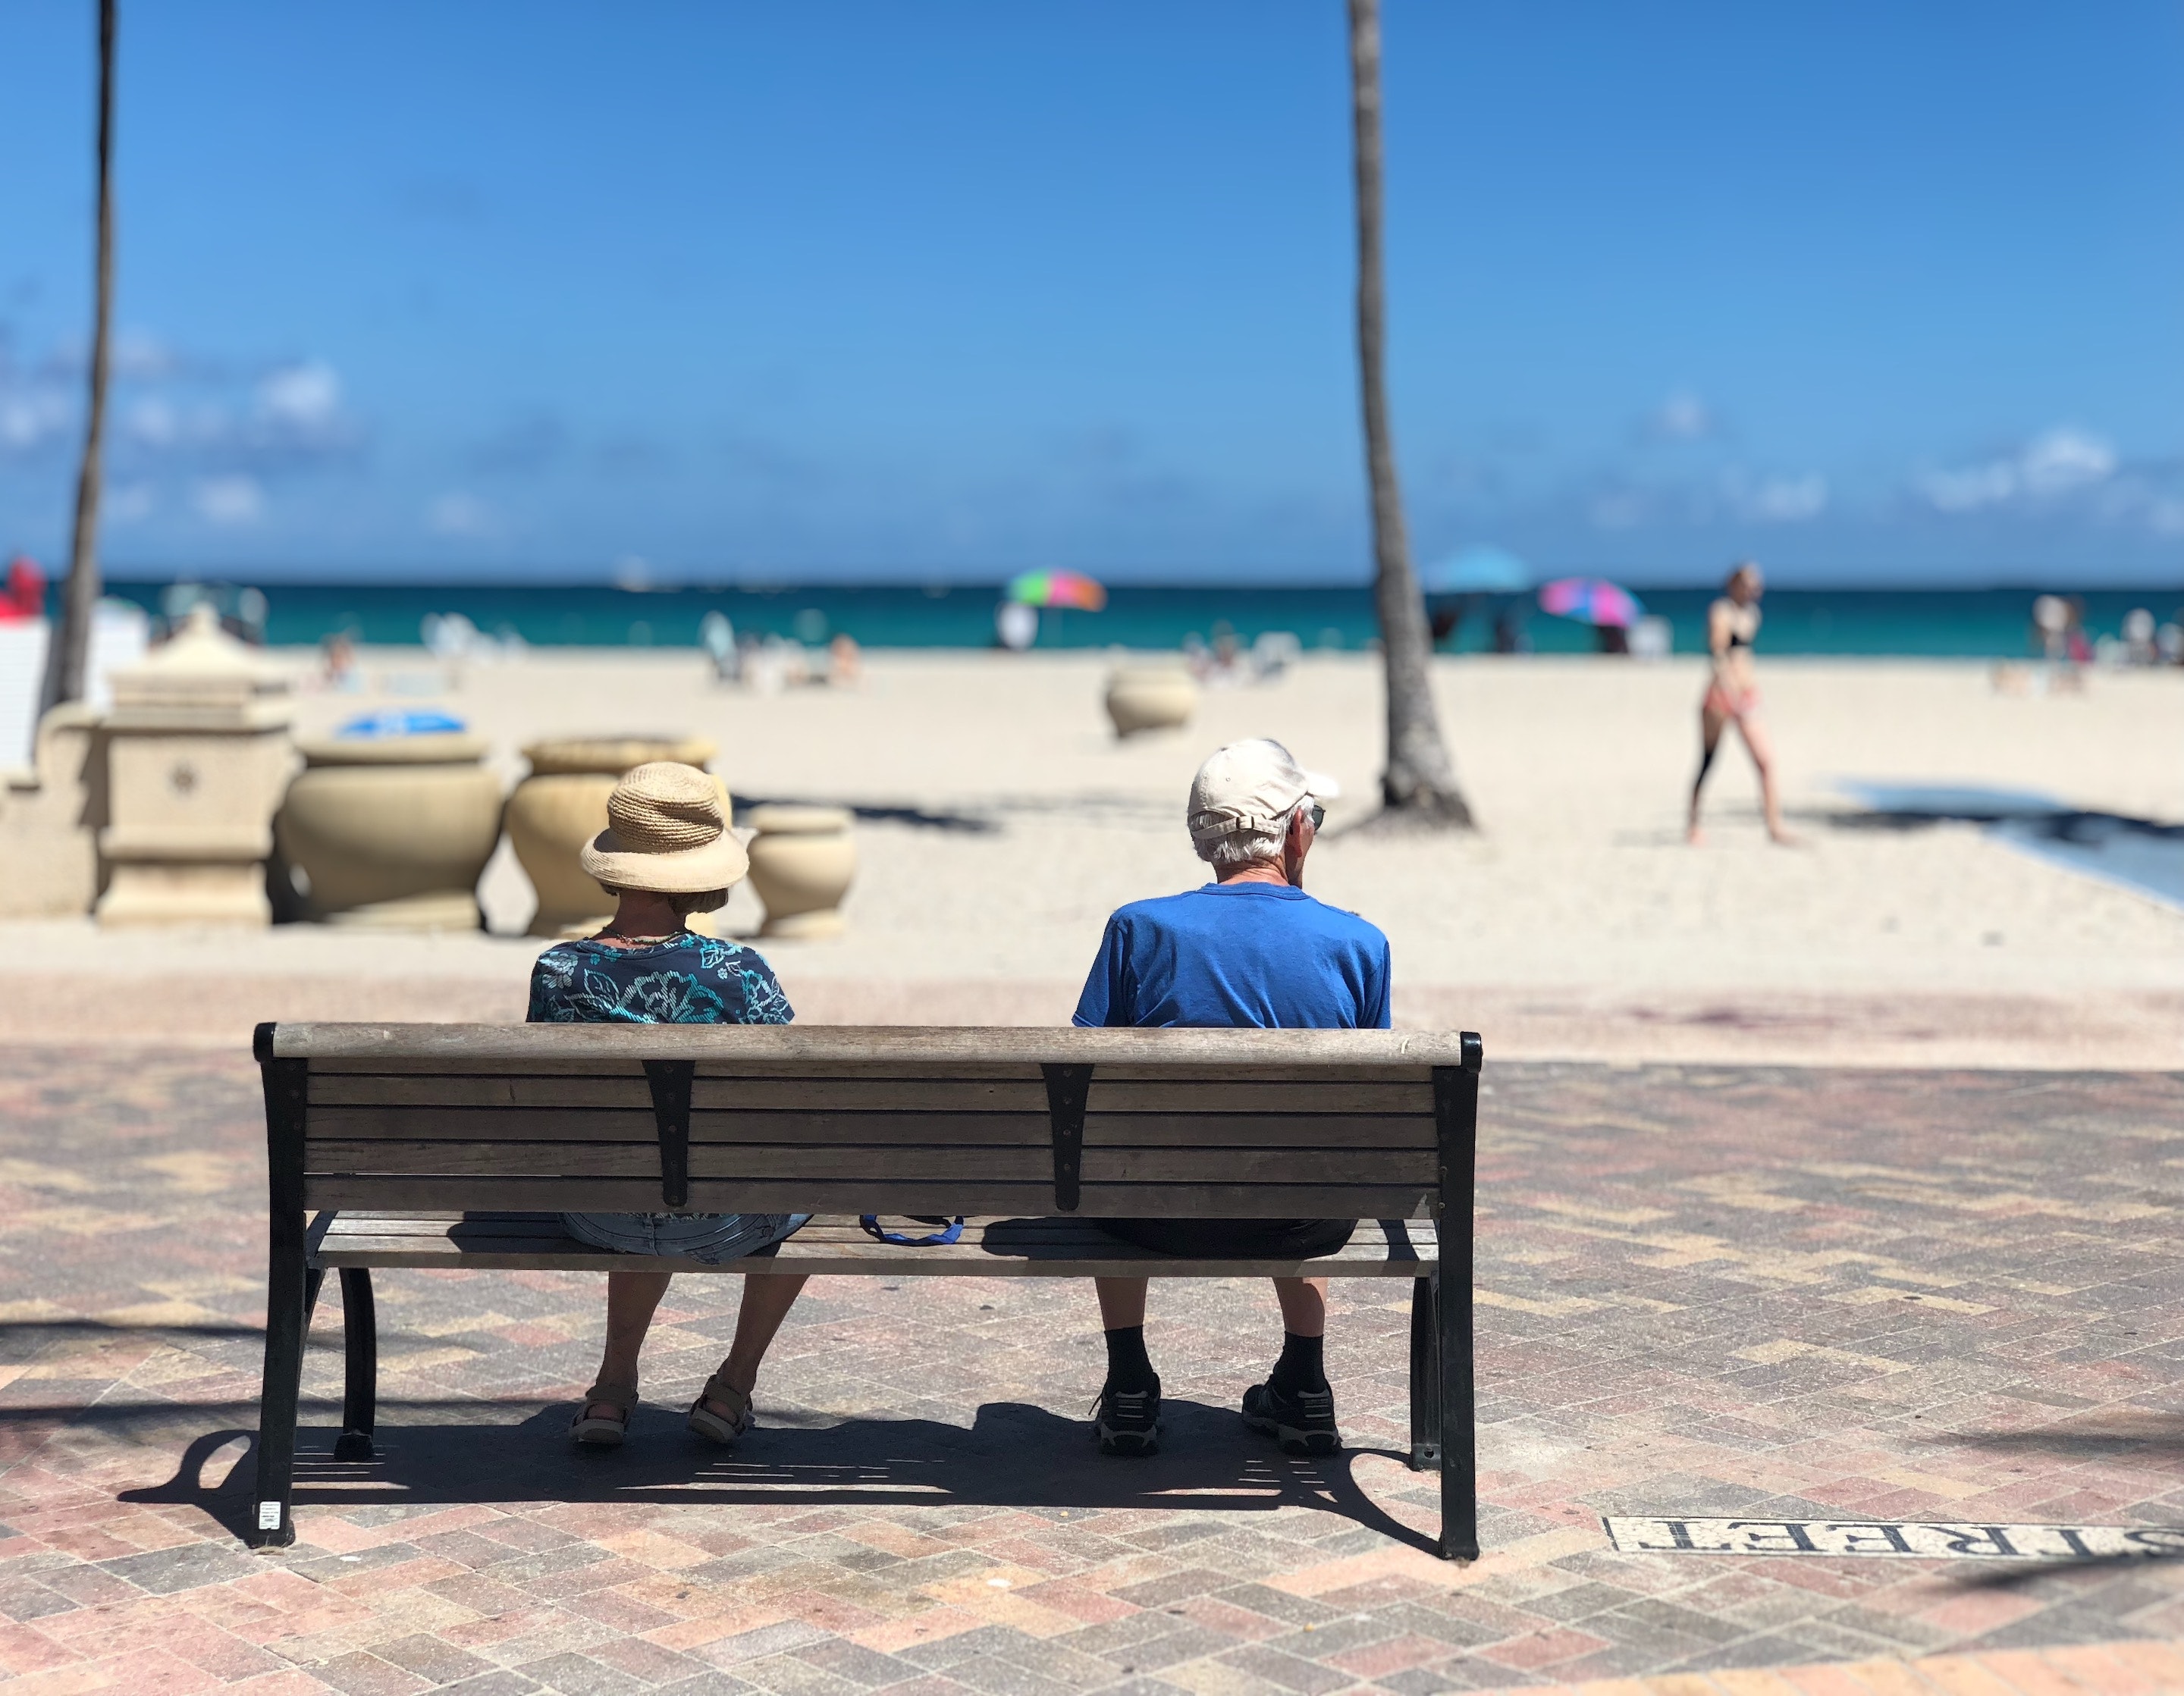 Vacaciones adultos mayores - Playas en México